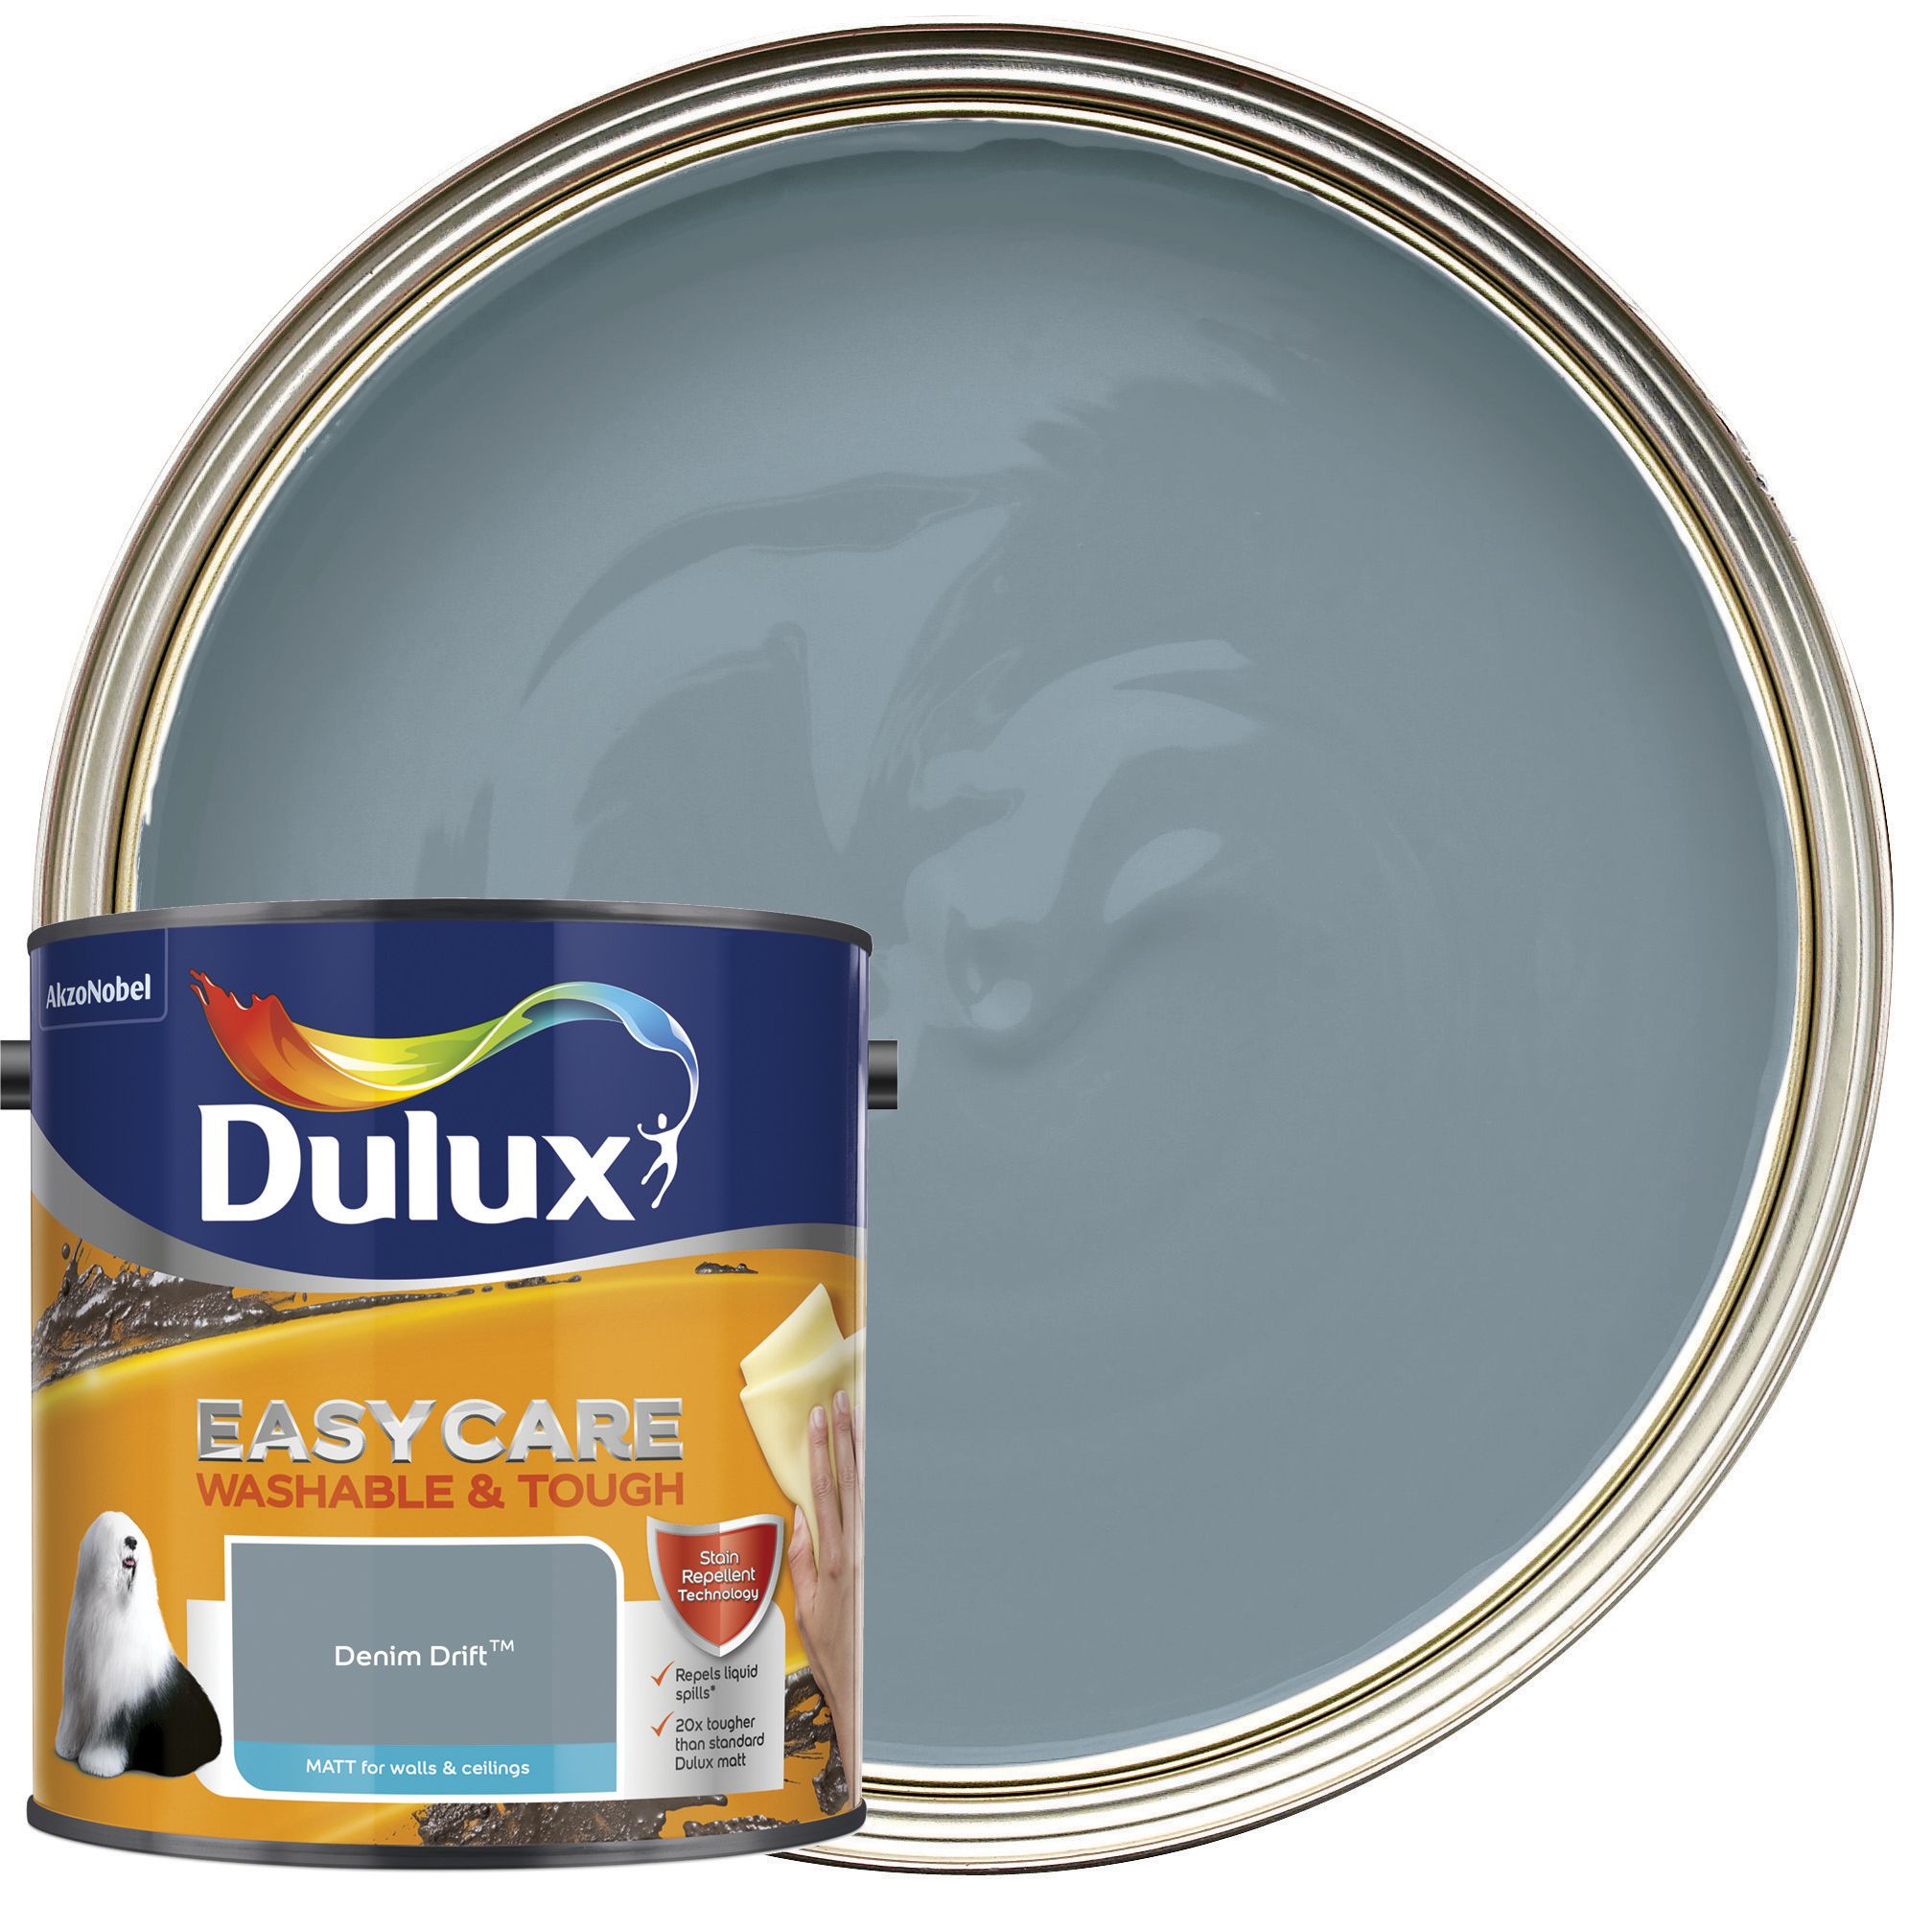 Image of Dulux Easycare Washable & Tough Matt Emulsion Paint - Denim Drift - 2.5L